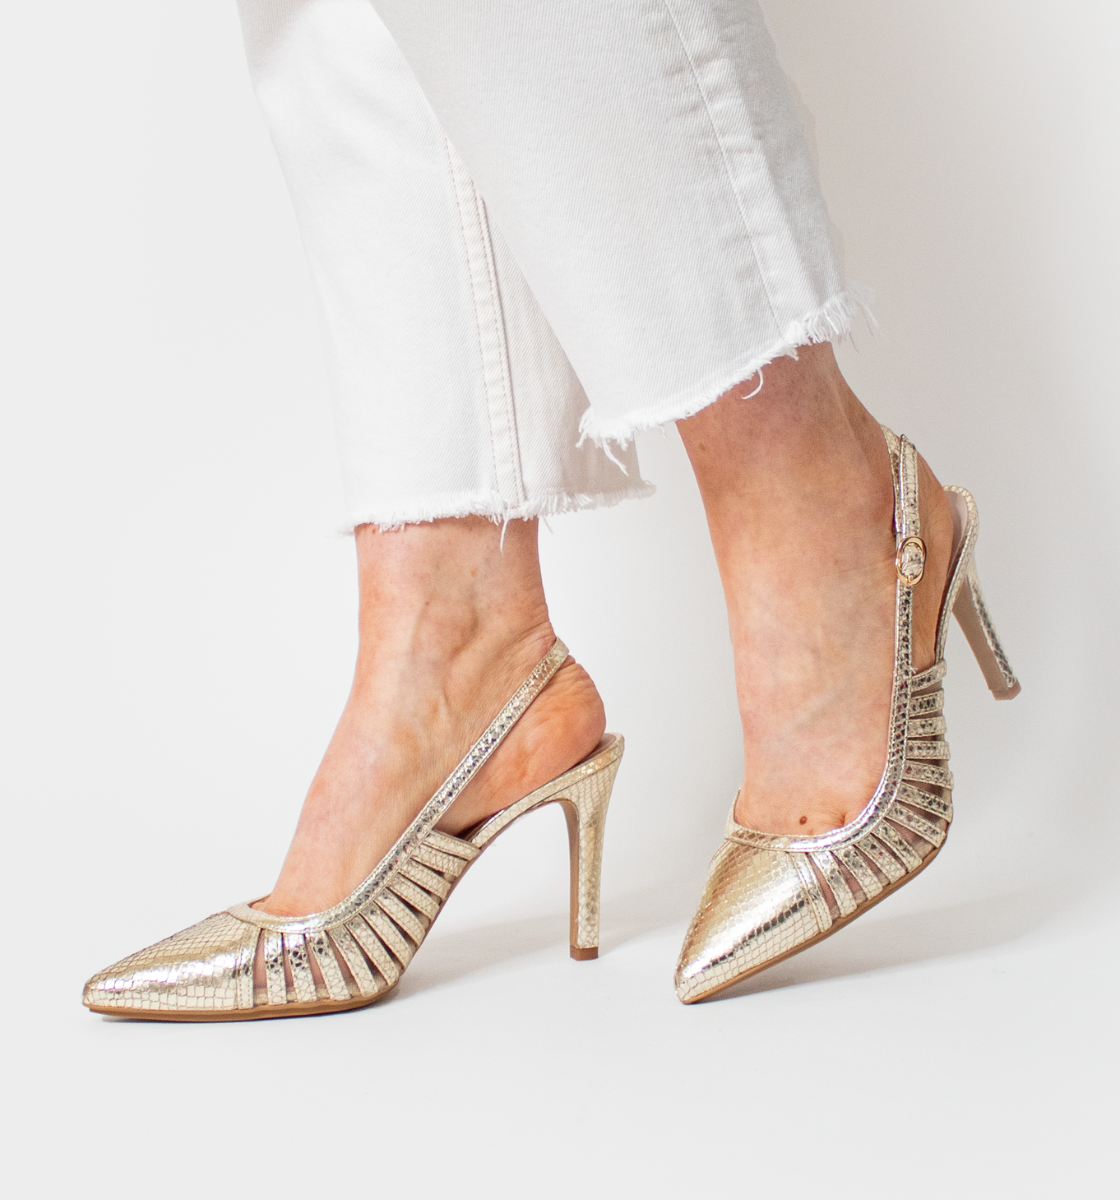 Buy Now Women Peach Solid Comfort Heels Sandals – Inc5 Shoes